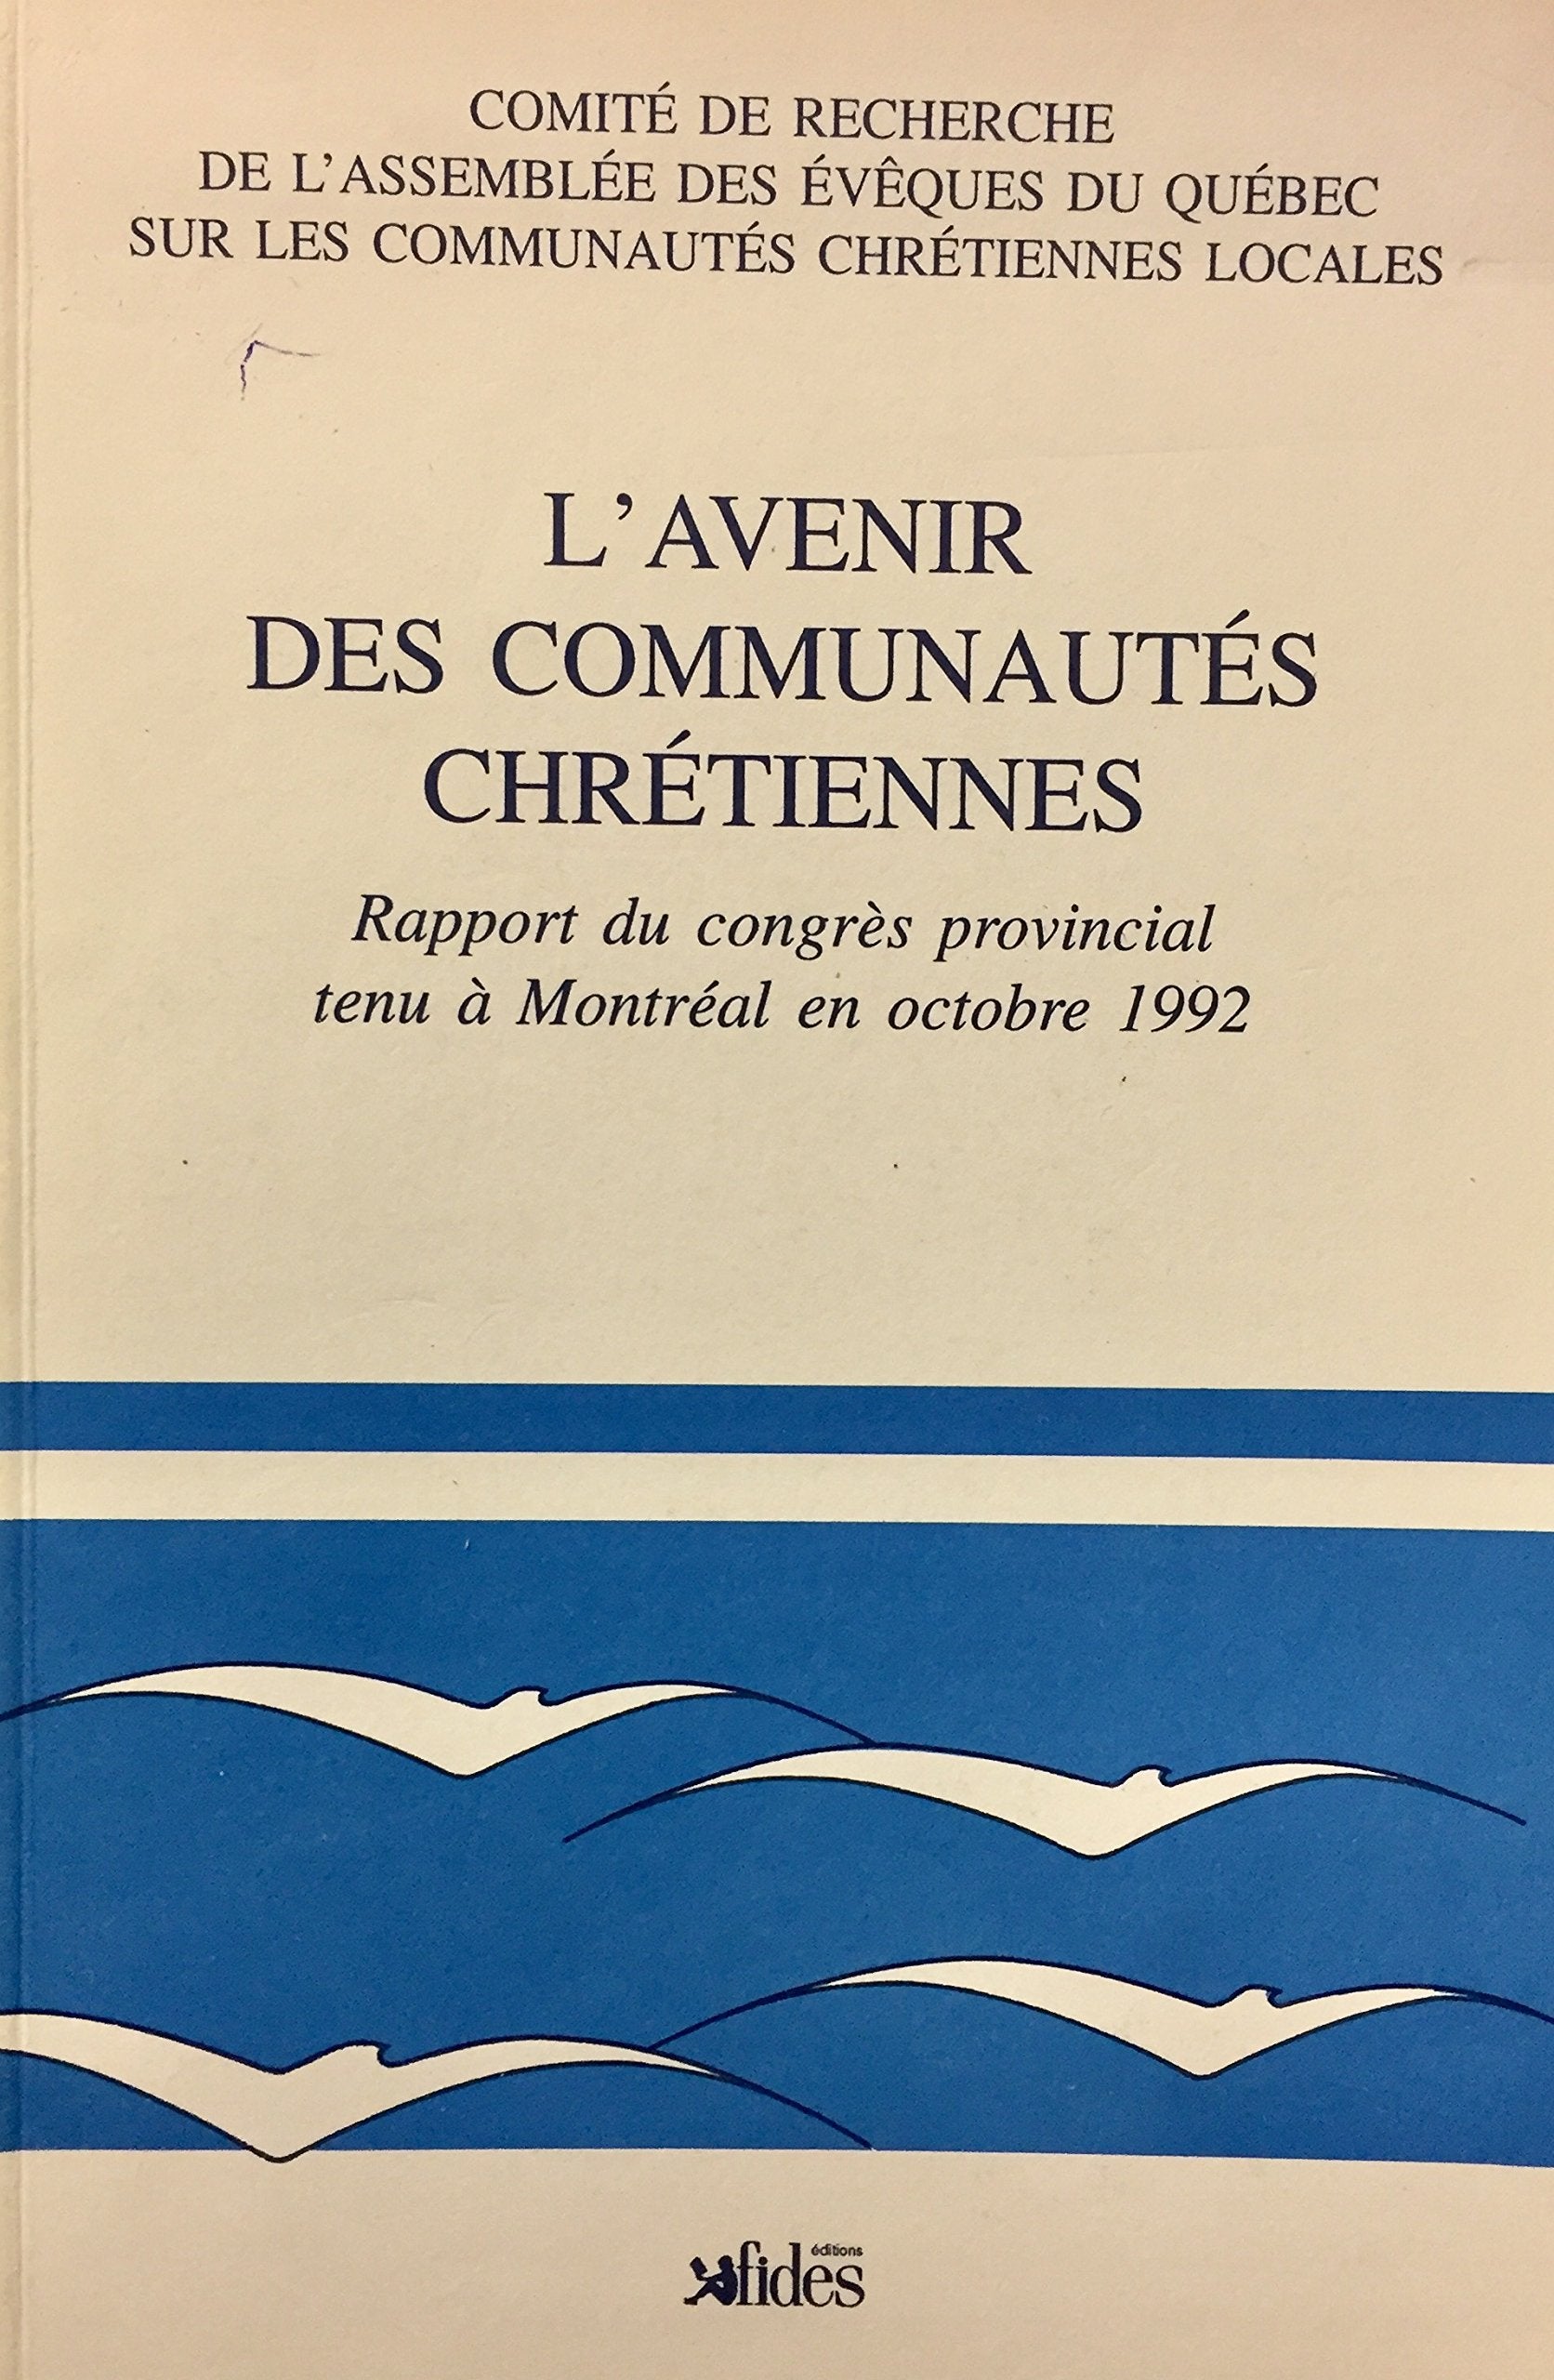 Livre ISBN 2762116368 L'avenir des communautés chrétiennes : Rapport du congrès provincial tenu à Montréal en octobre 1992